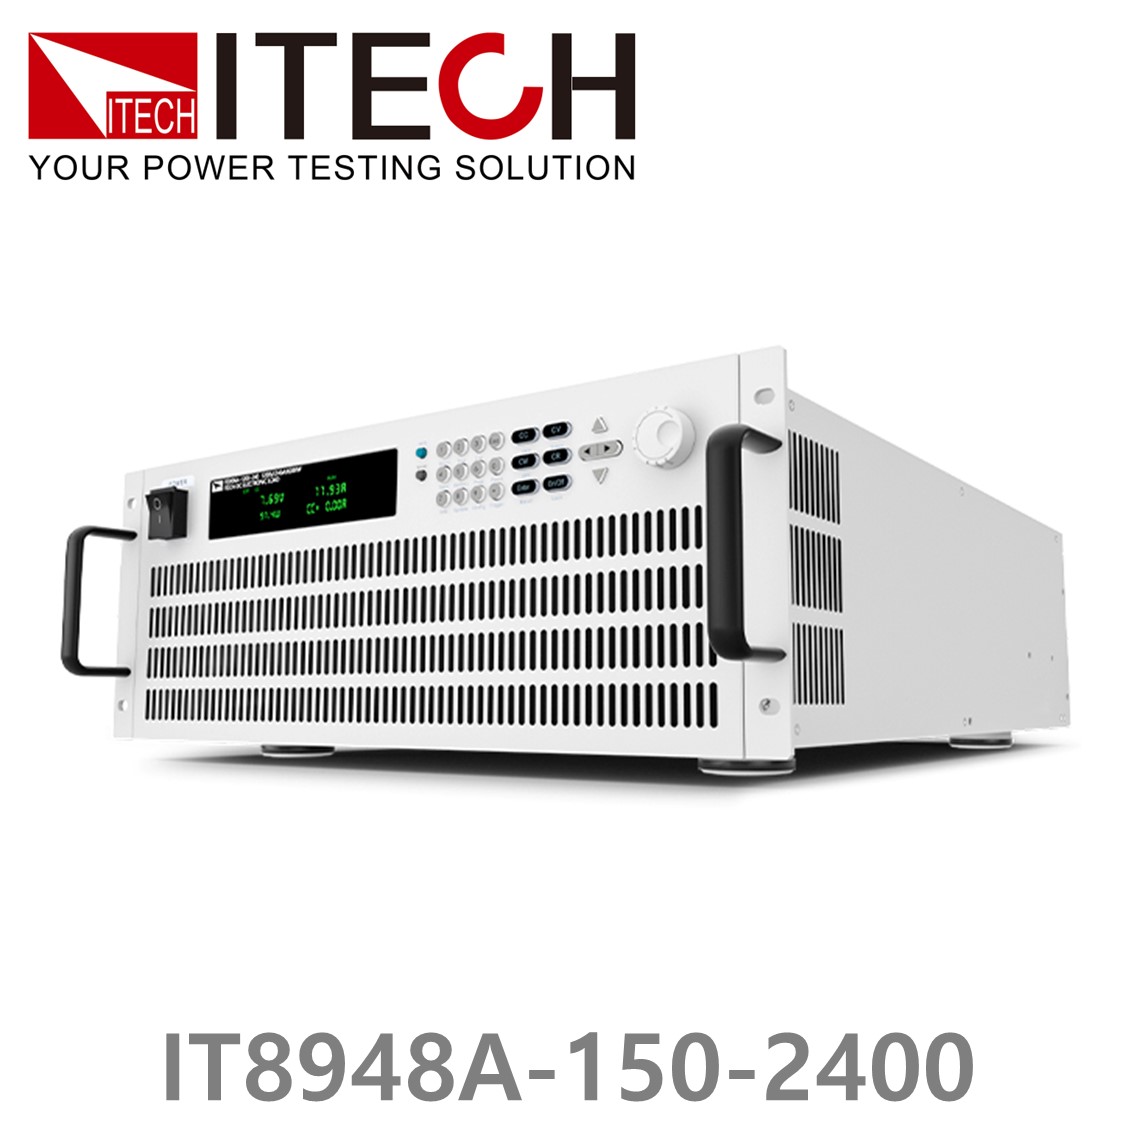 [ ITECH ] IT8948A-150-2400  고성능 고전력 DC 전자로드 150V/2400A/48kW (37U)